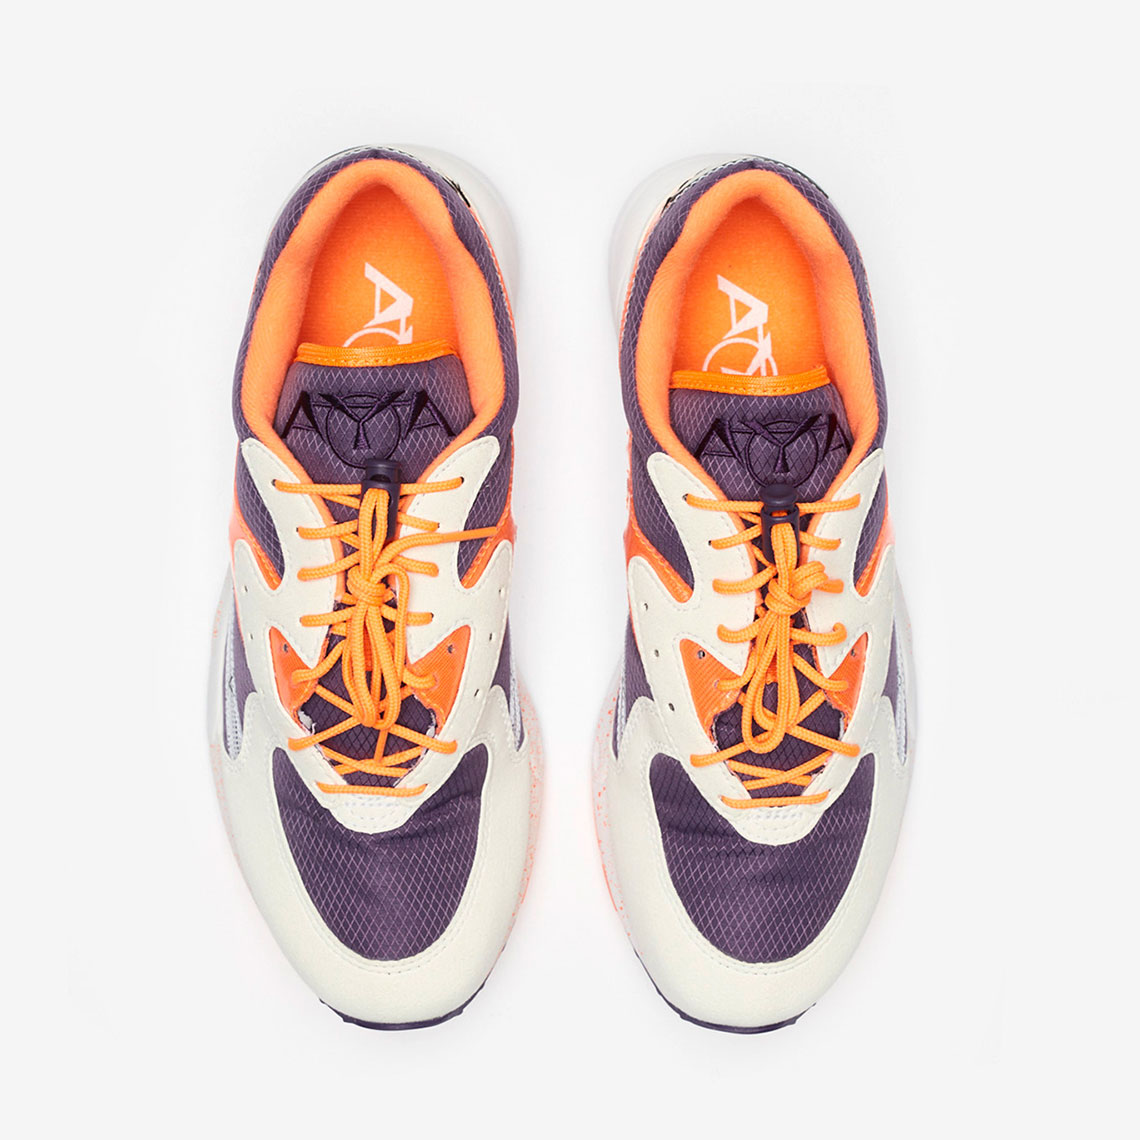 Saucony Aya Purple Orange S70460-1 Release Date | SneakerNews.com